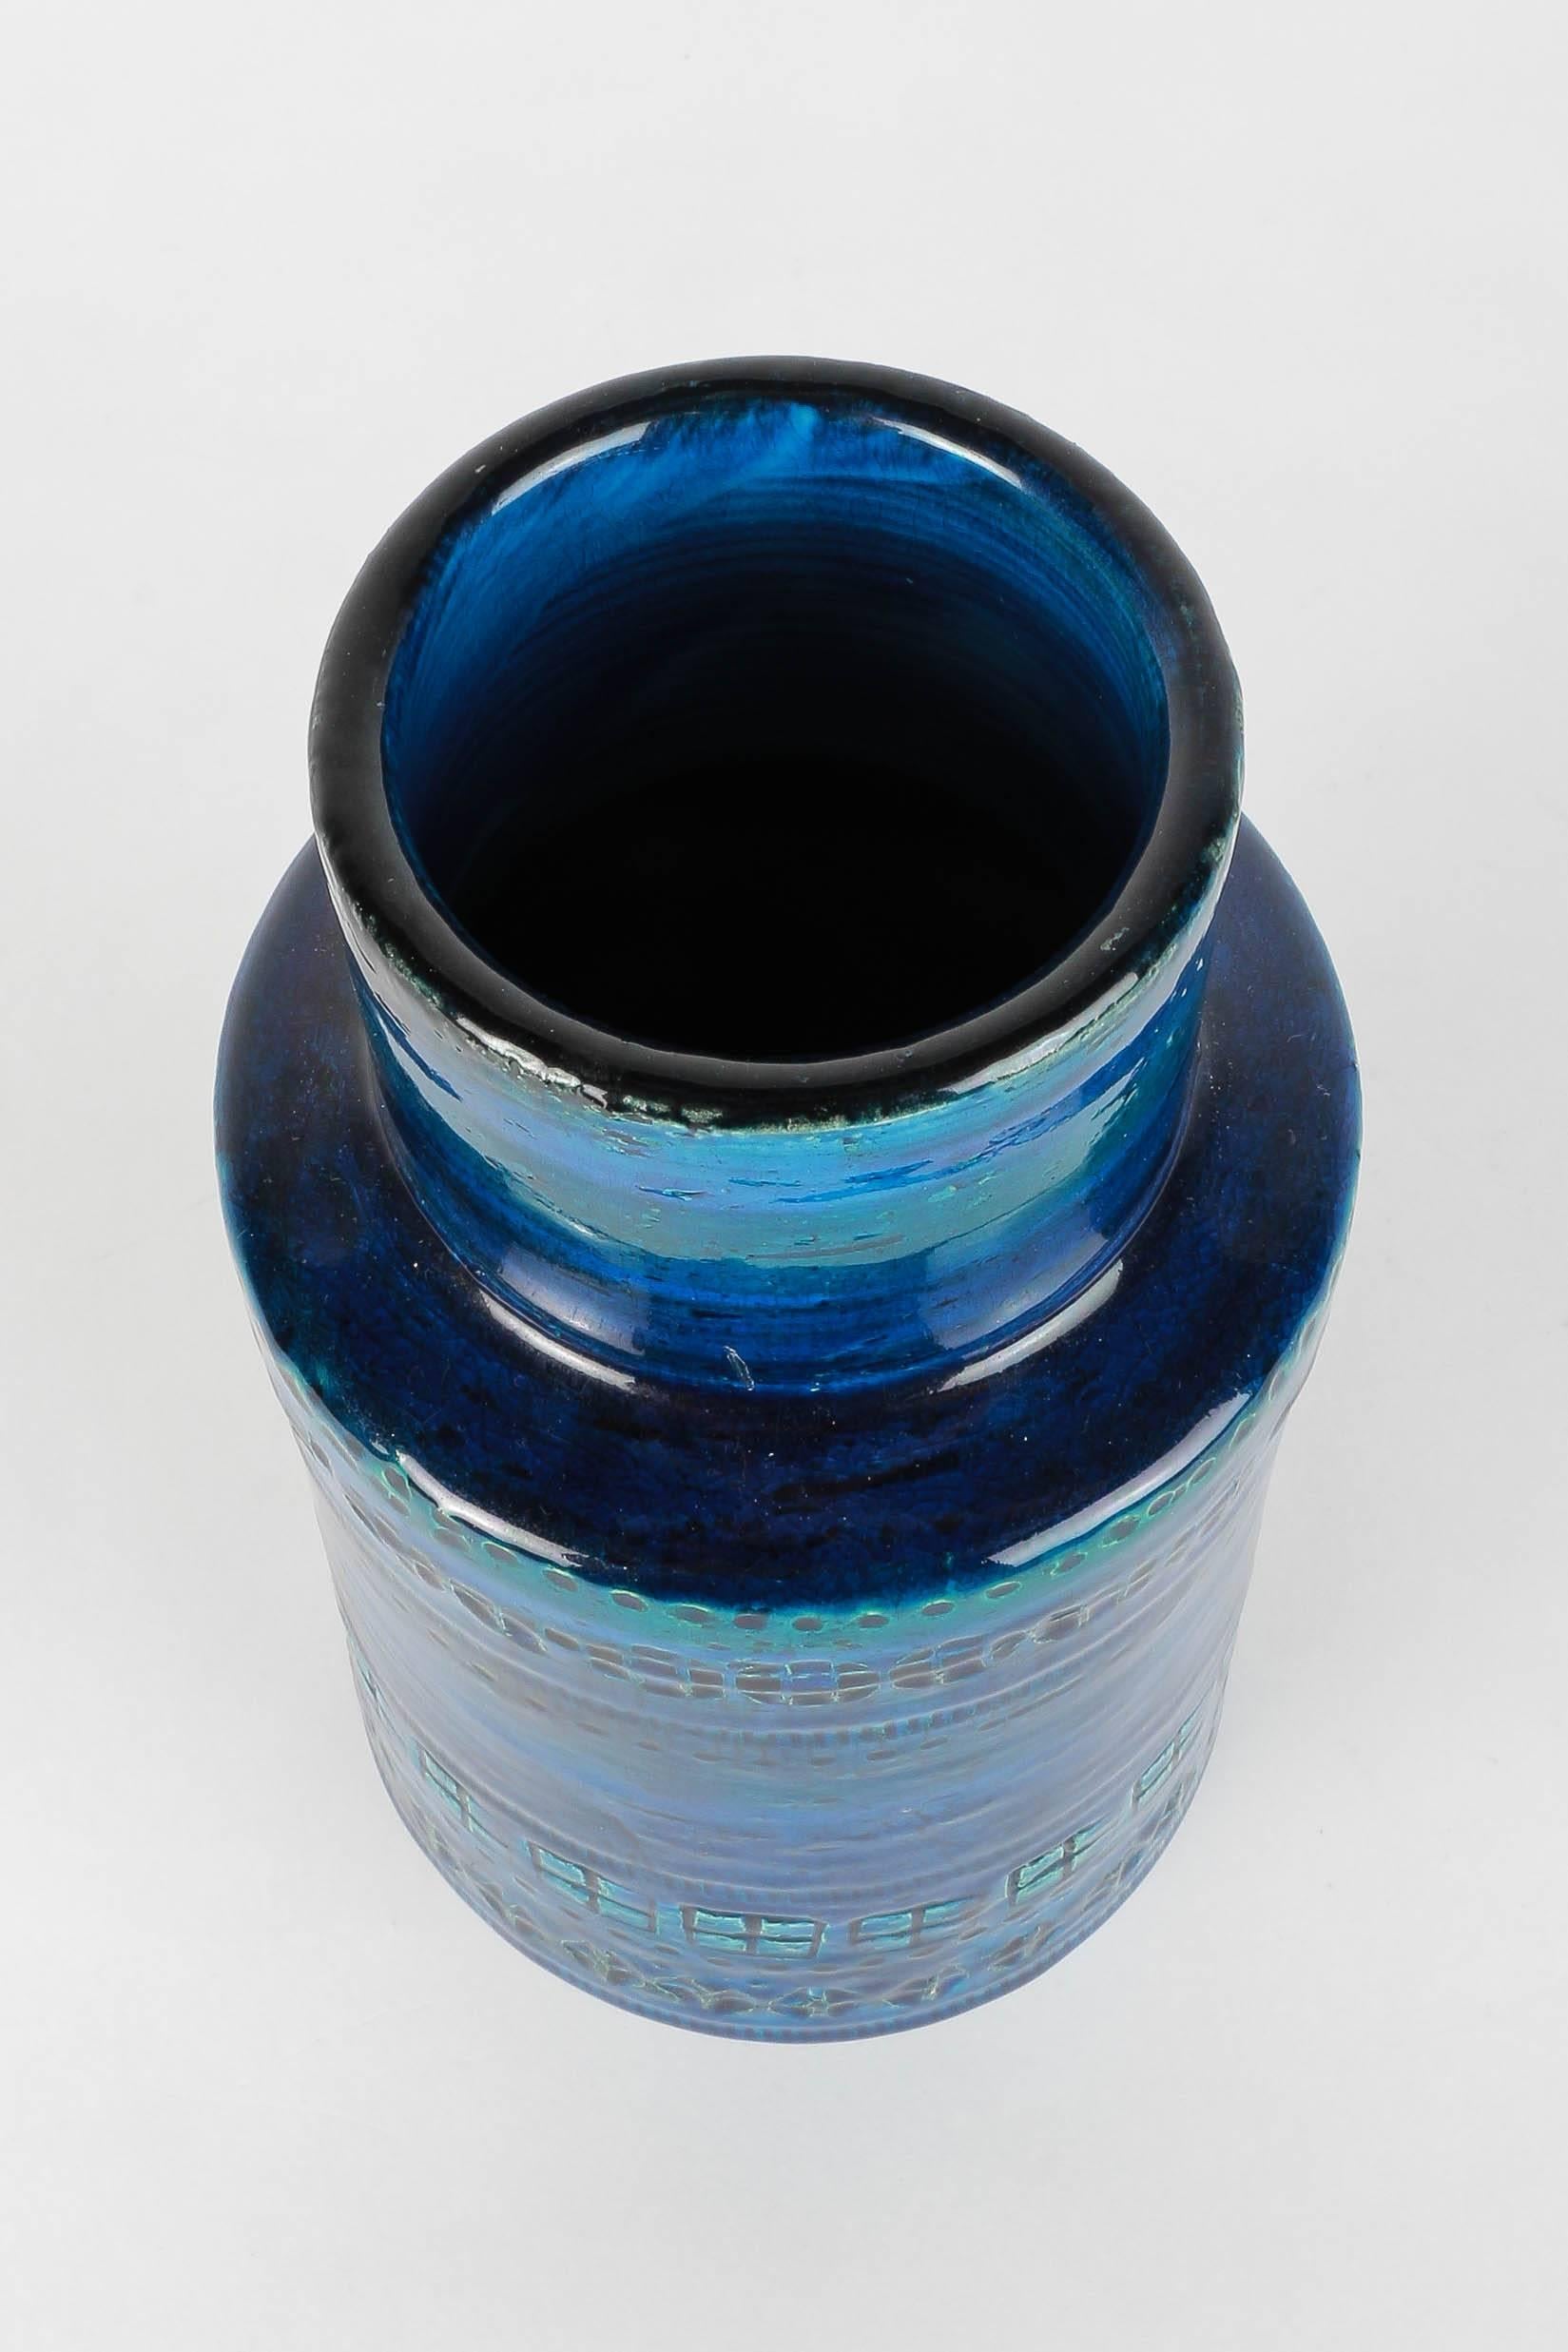 Mid-Century Modern Aldo Londi for Bitossi Rimini Blu Ceramic Vase, 1950s